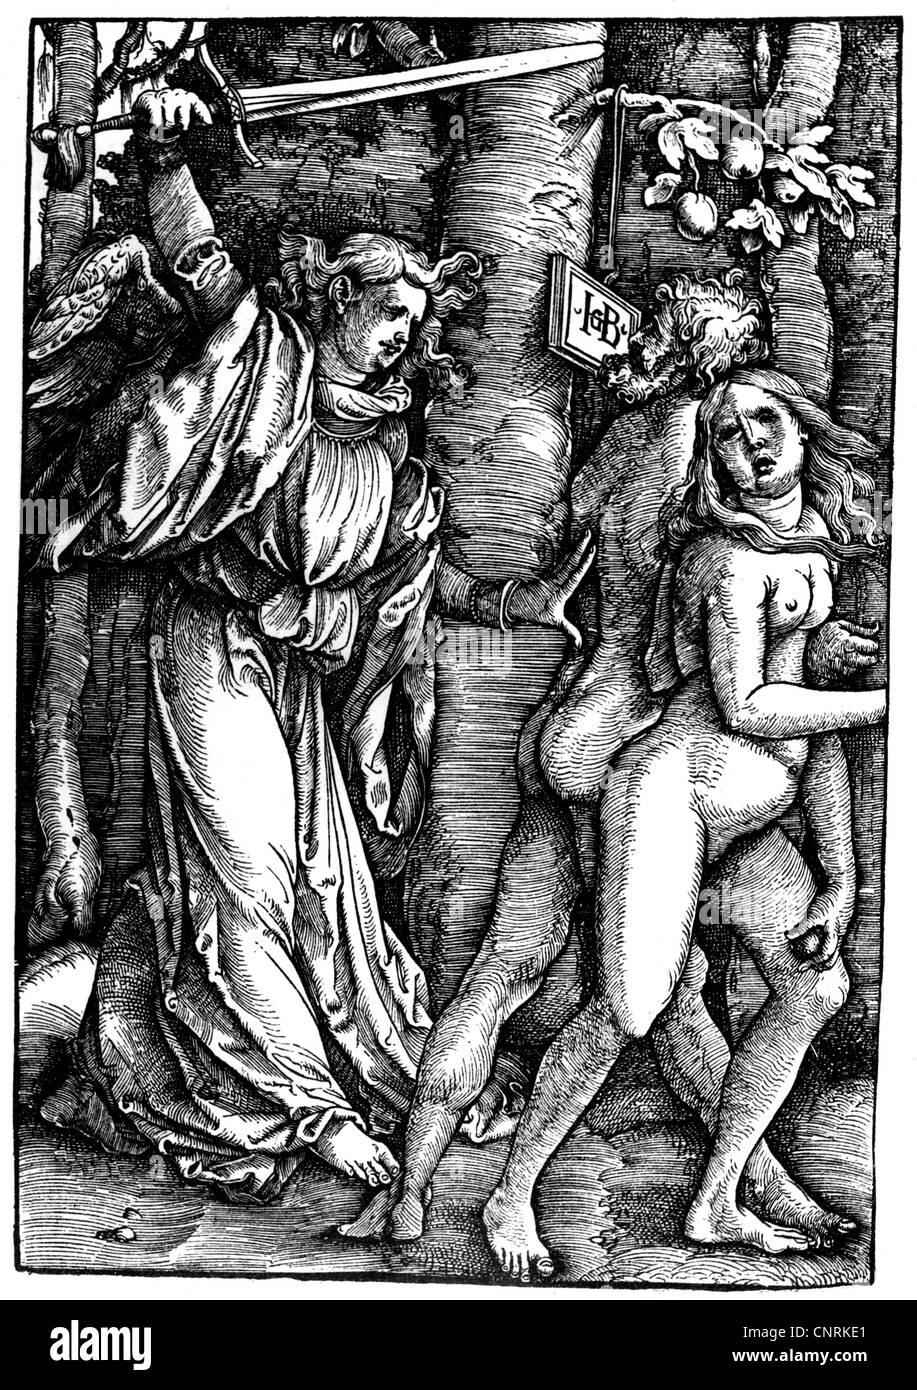 Religione, scene bibliche, Adamo ed Eva, espulsione dal paradiso, taglio di legno di Hans Baldung Grien, circa 1514, diritti aggiuntivi-clearences-non disponibile Foto Stock